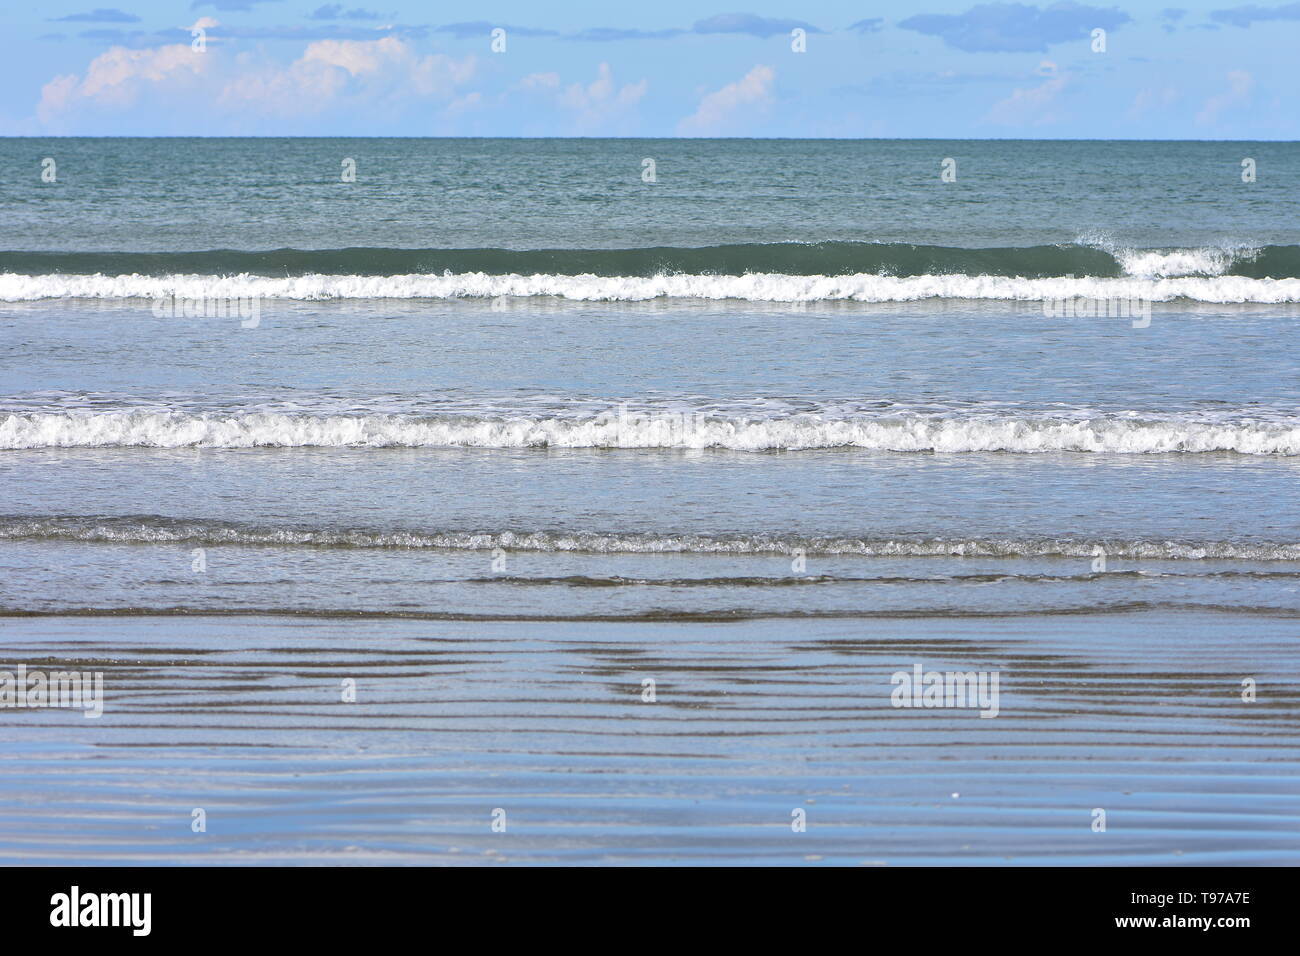 Des rangées de minuscules vagues de surf de matériel roulant à l'océan calme plage de sable plat. Banque D'Images